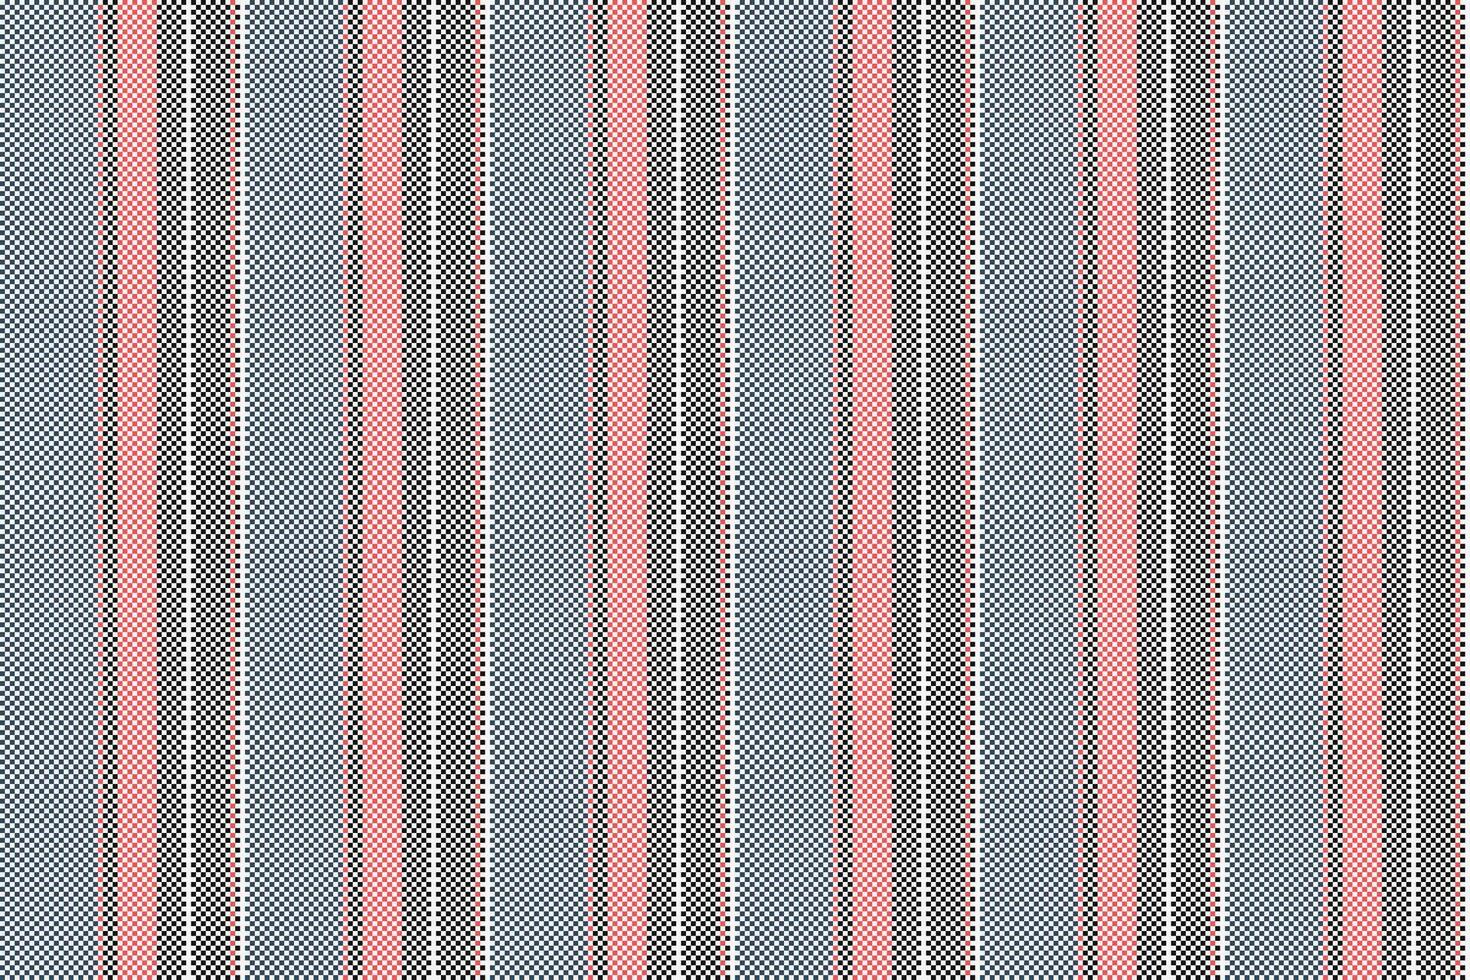 mönster vektor bakgrund av rand textur rader med en vertikal tyg sömlös textil.